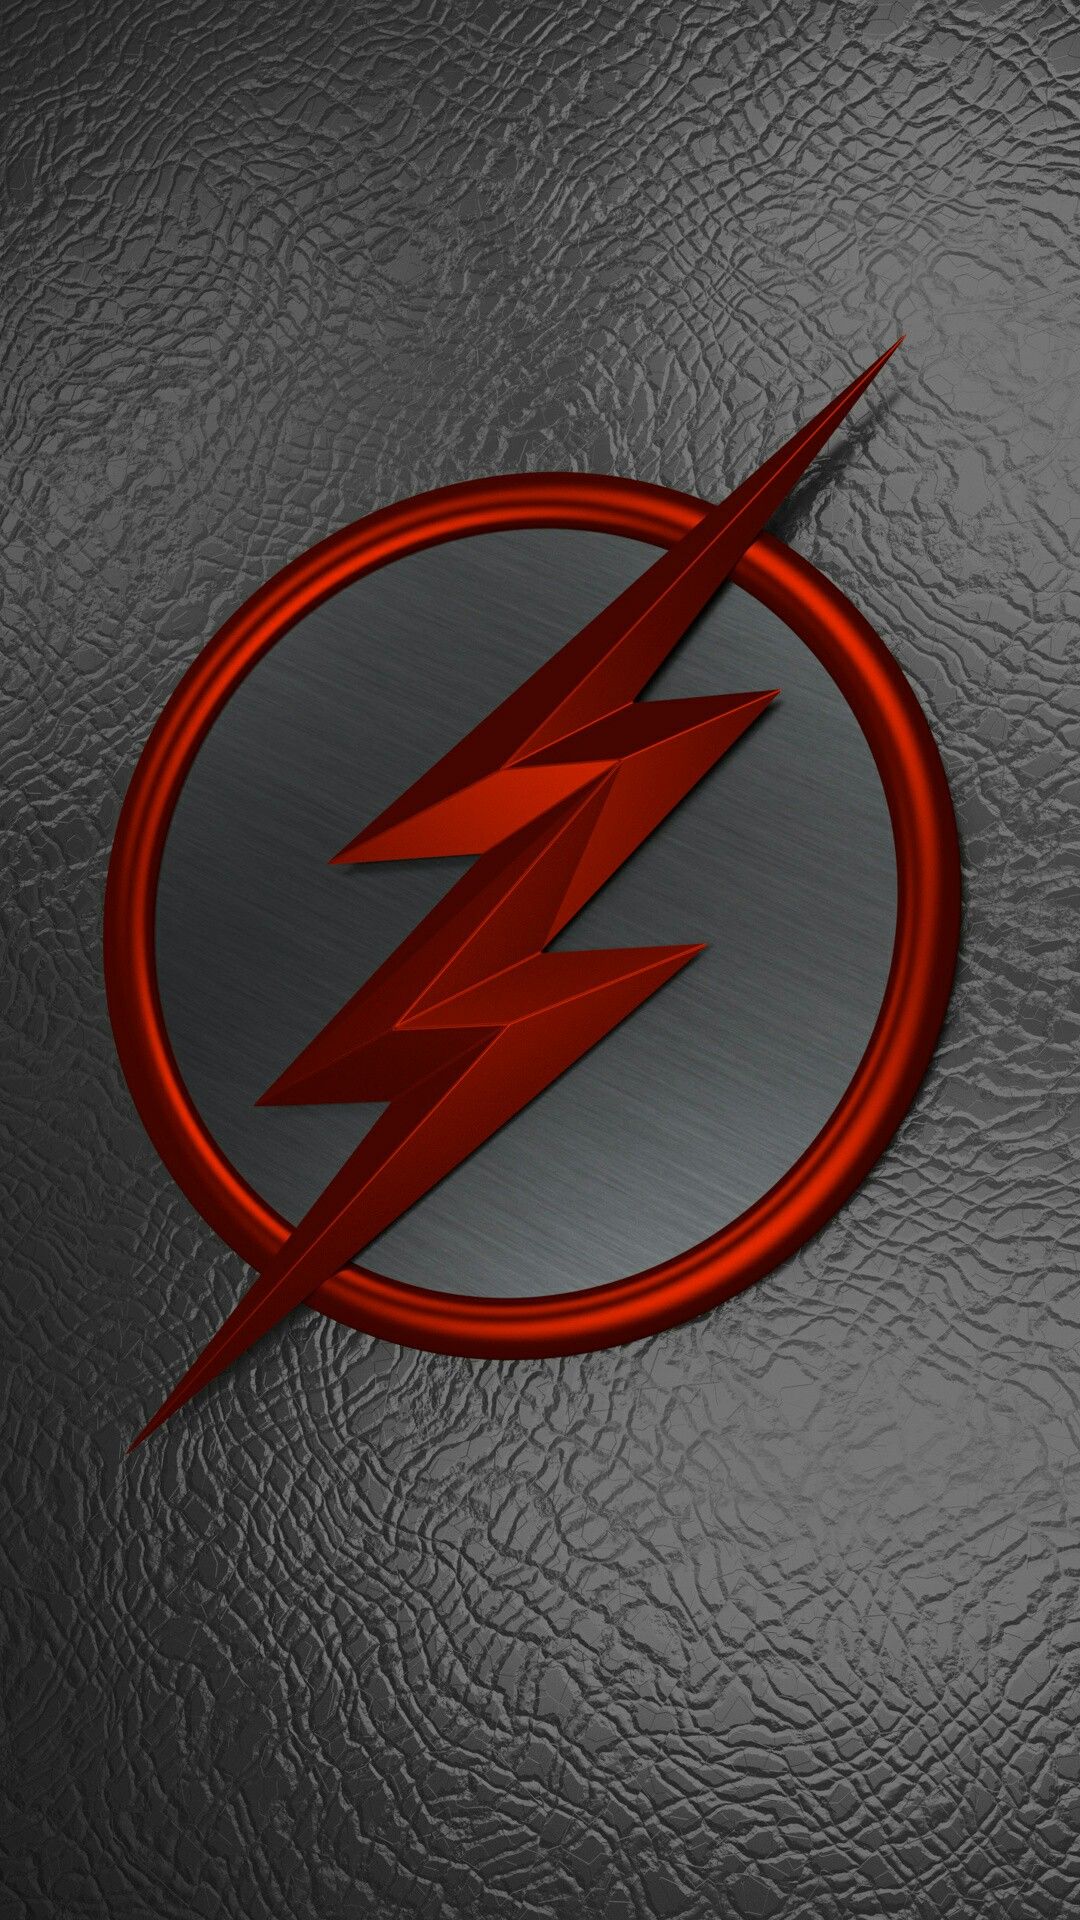 Black Flash (con imágenes). Flash fondos de pantalla, Fondo de pantalla de iron man, Fondo de pantalla de avengers